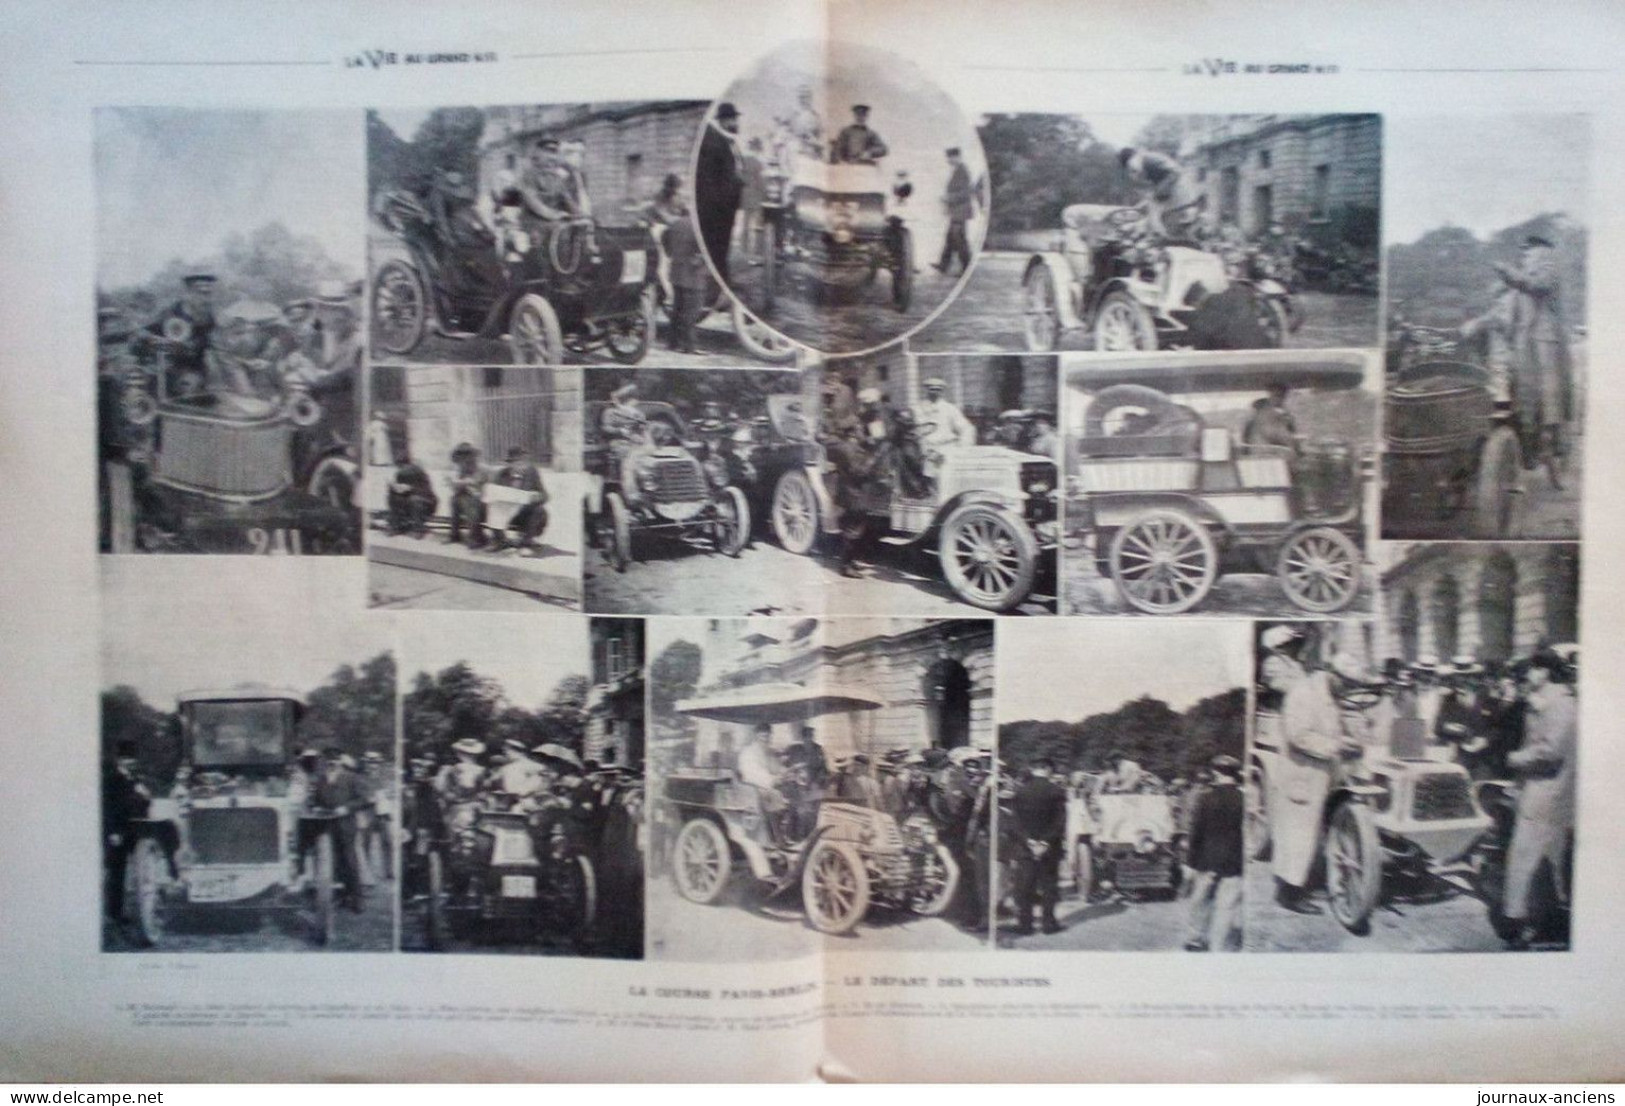 1901 COURSE AUTOMOBILE PARIS BERLIN - LA BARONNE ZUYLE DE NYEVELT - LA VIE AU GRAND AIR - Automobile - F1